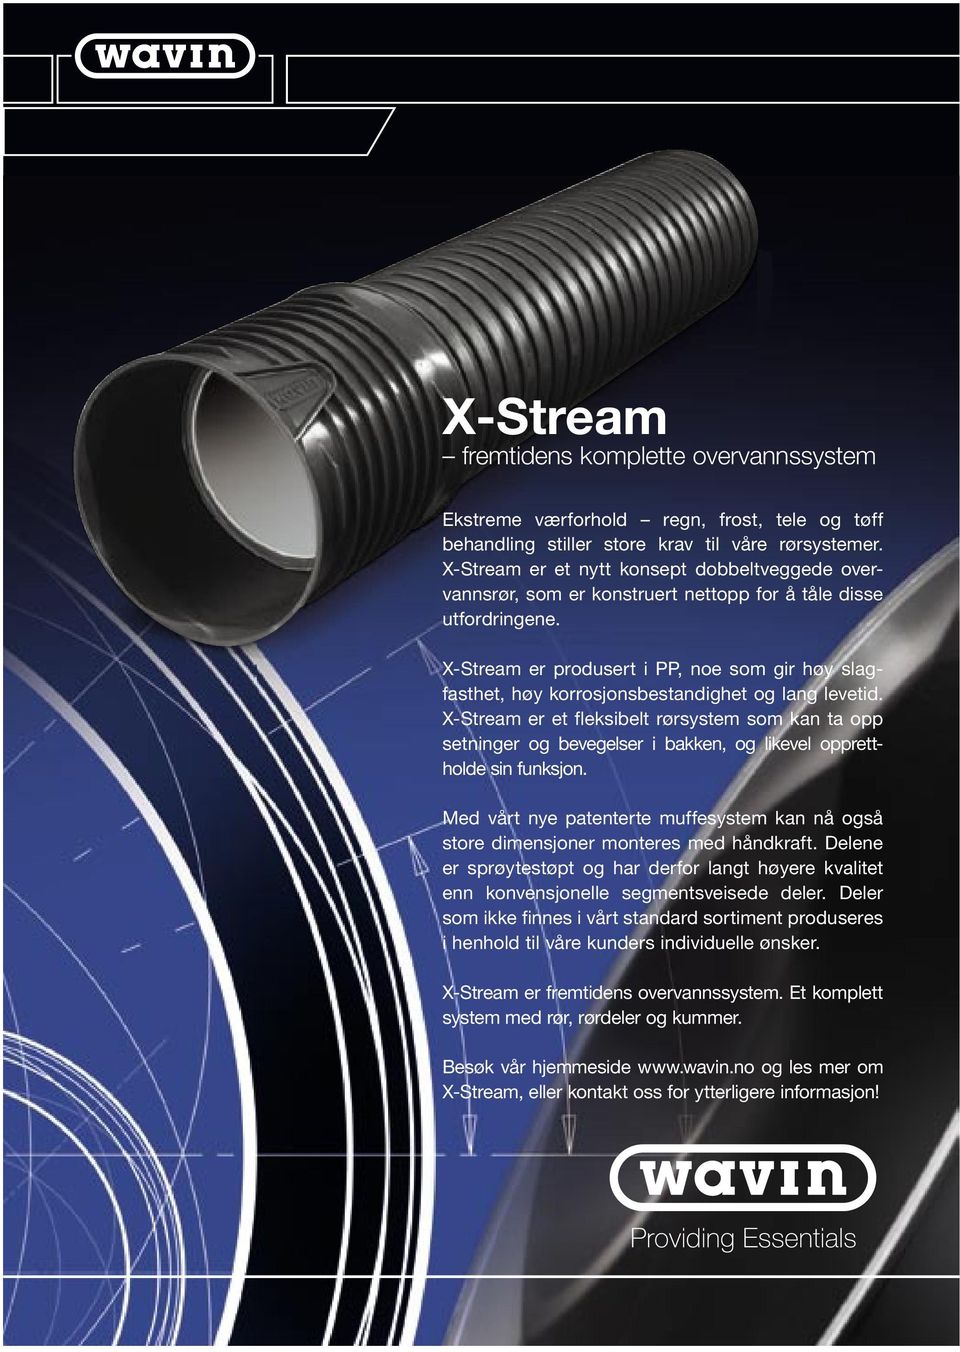 X-Stream er produsert i PP, noe som gir høy slagfasthet, høy korrosjonsbestandighet og lang levetid.